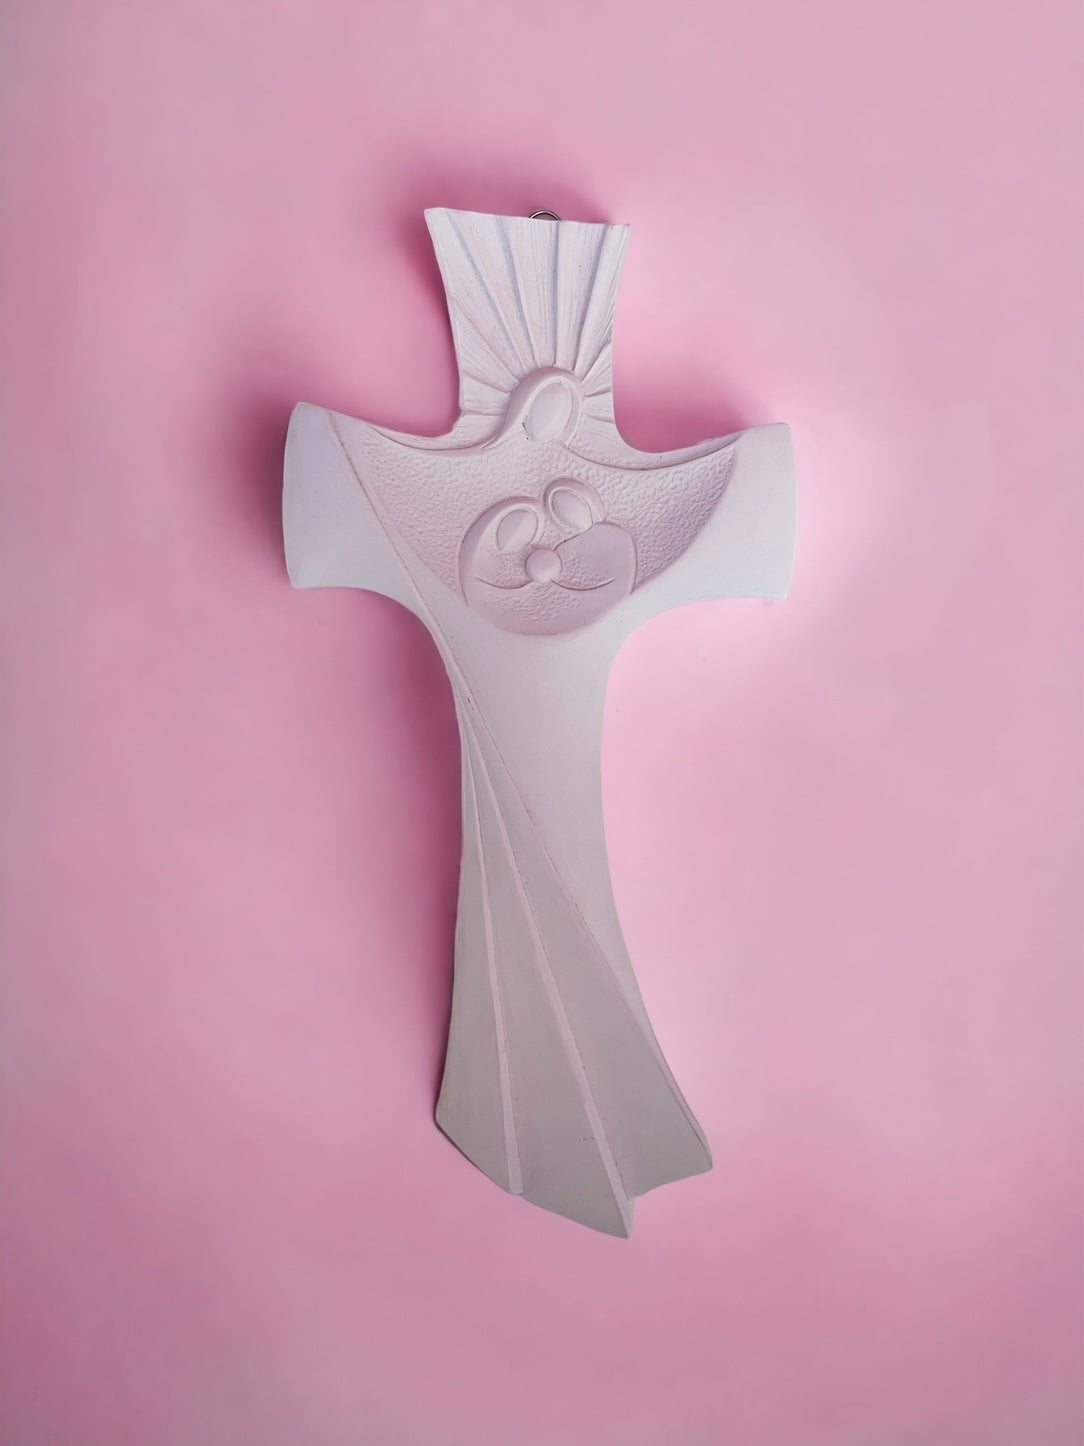 Croce bianca Stile moderno in resina con Sacra Famiglia stilizzata